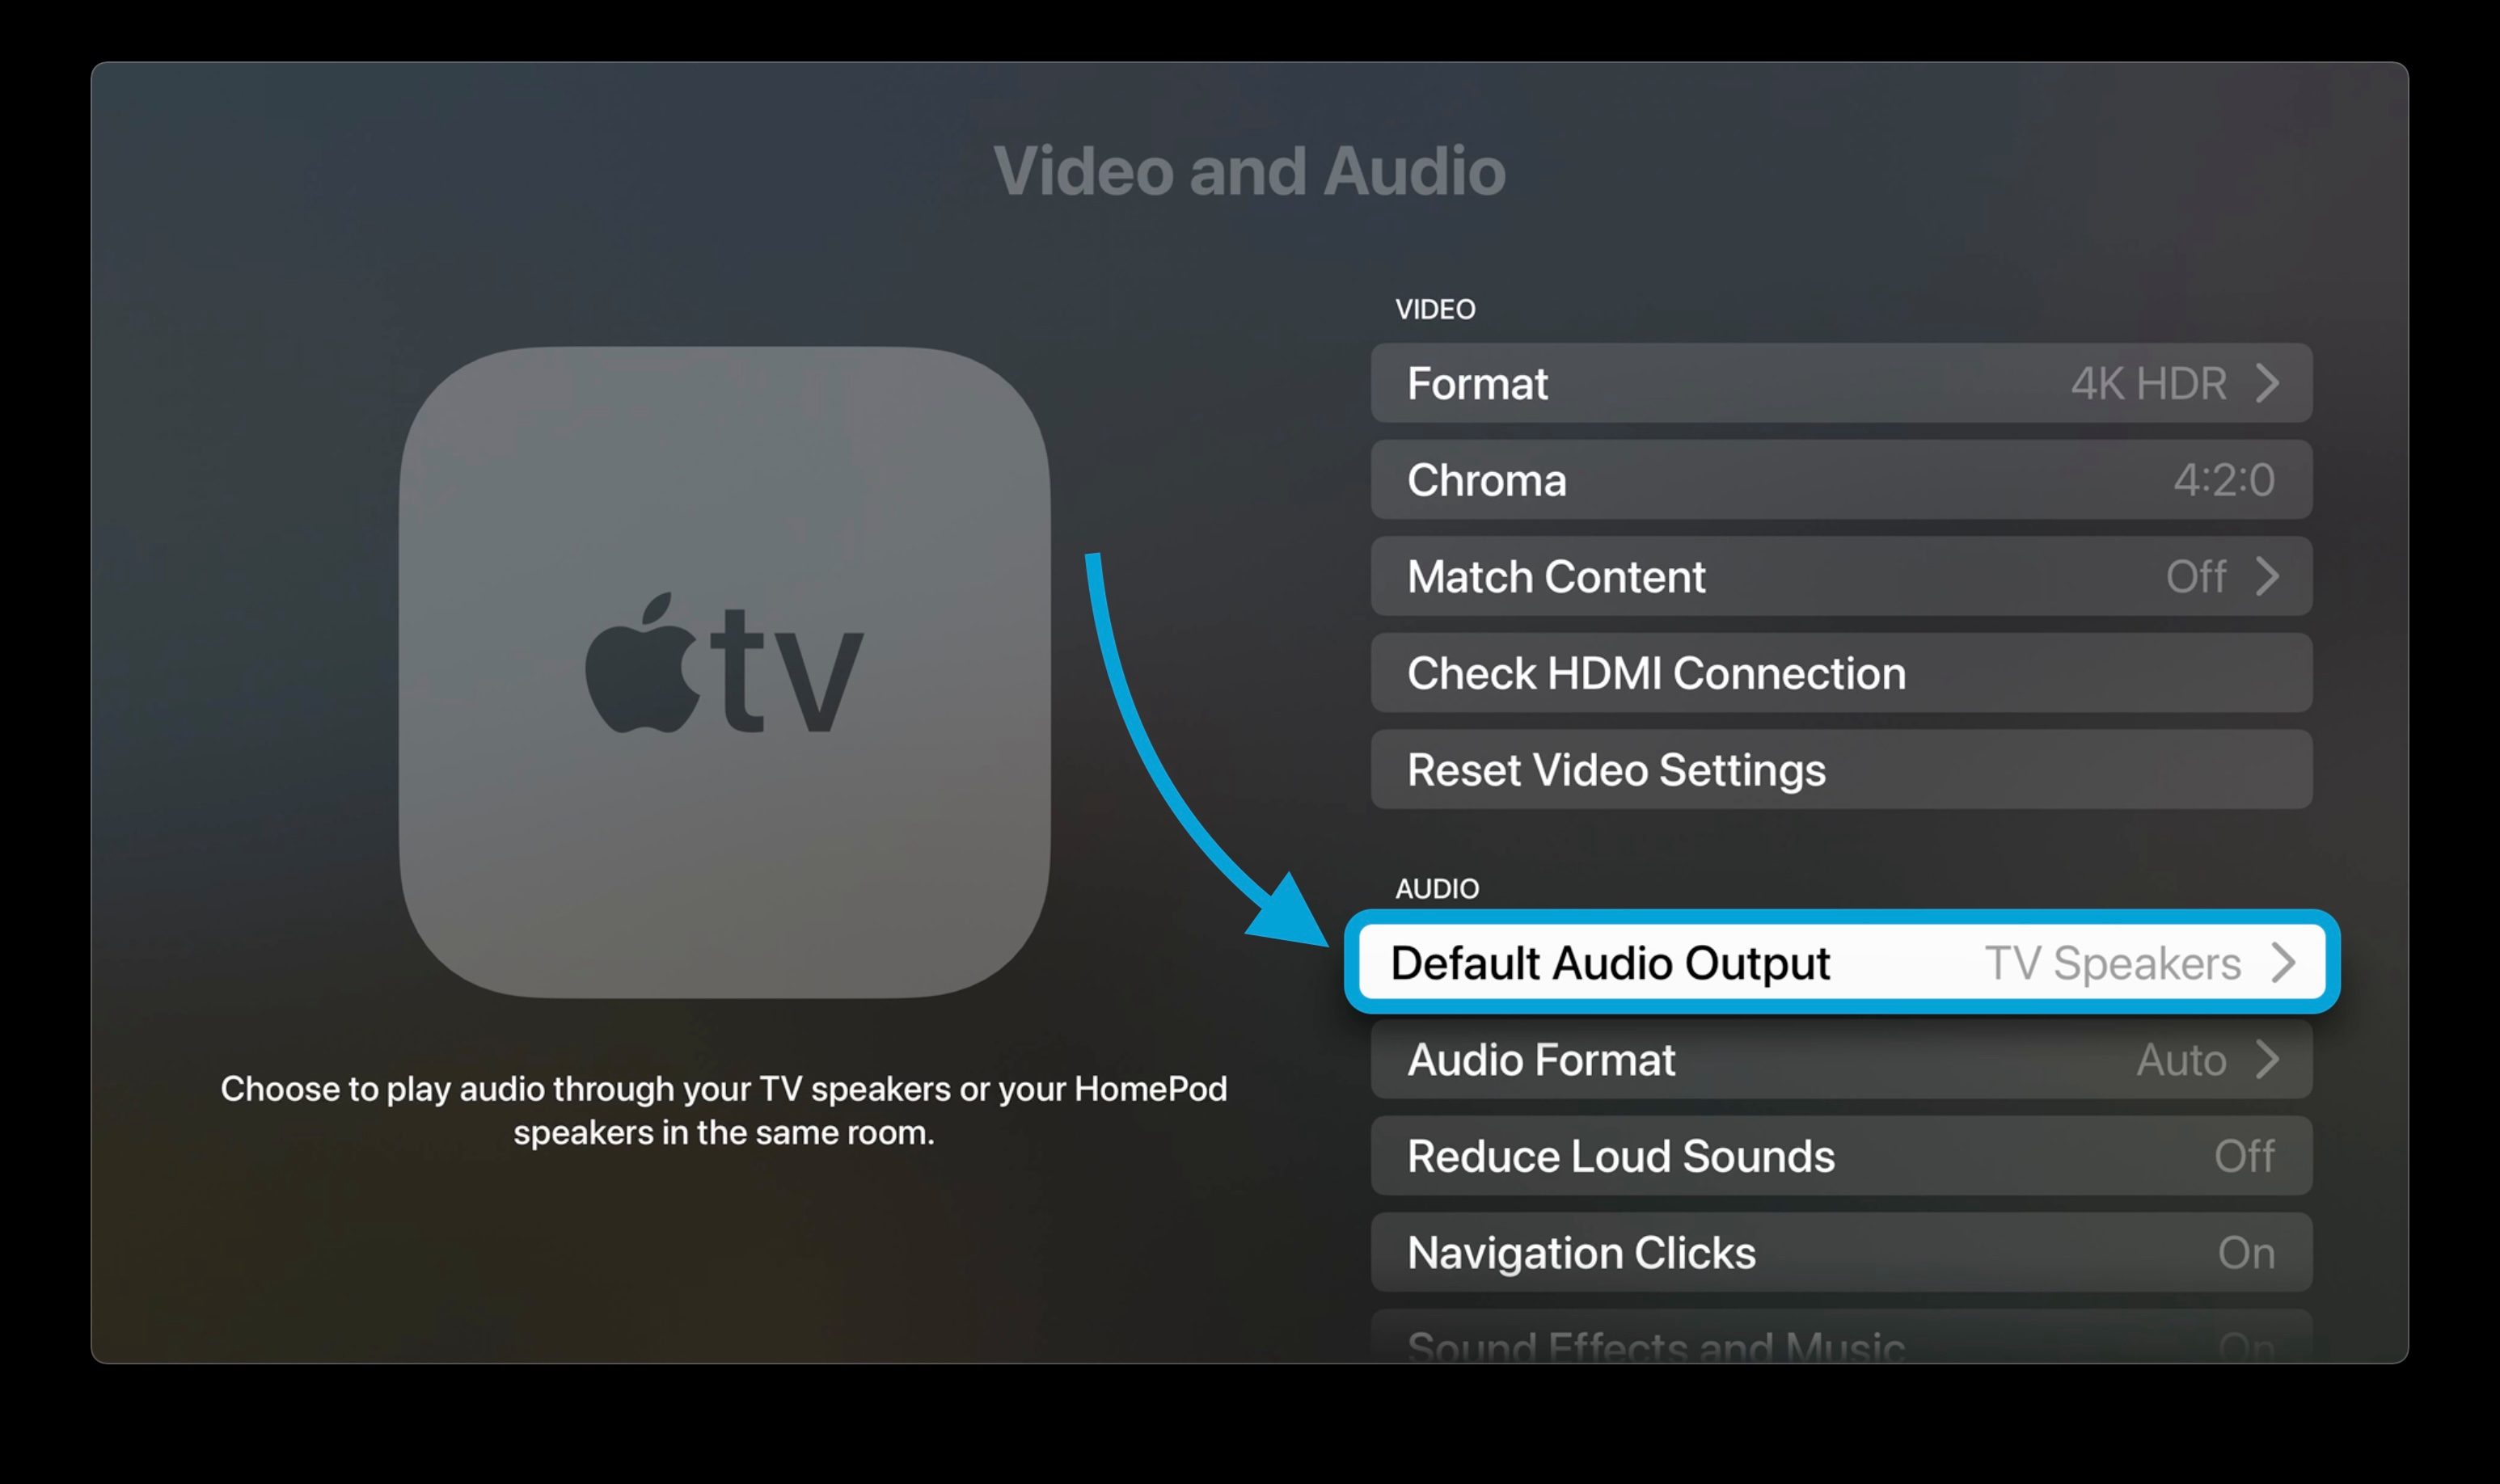 نحوه تنظیم HomePod به عنوان پیش فرض پیاده روی برای بلندگوهای Apple TV 2 - گزینه Default Audio Out را انتخاب کنید